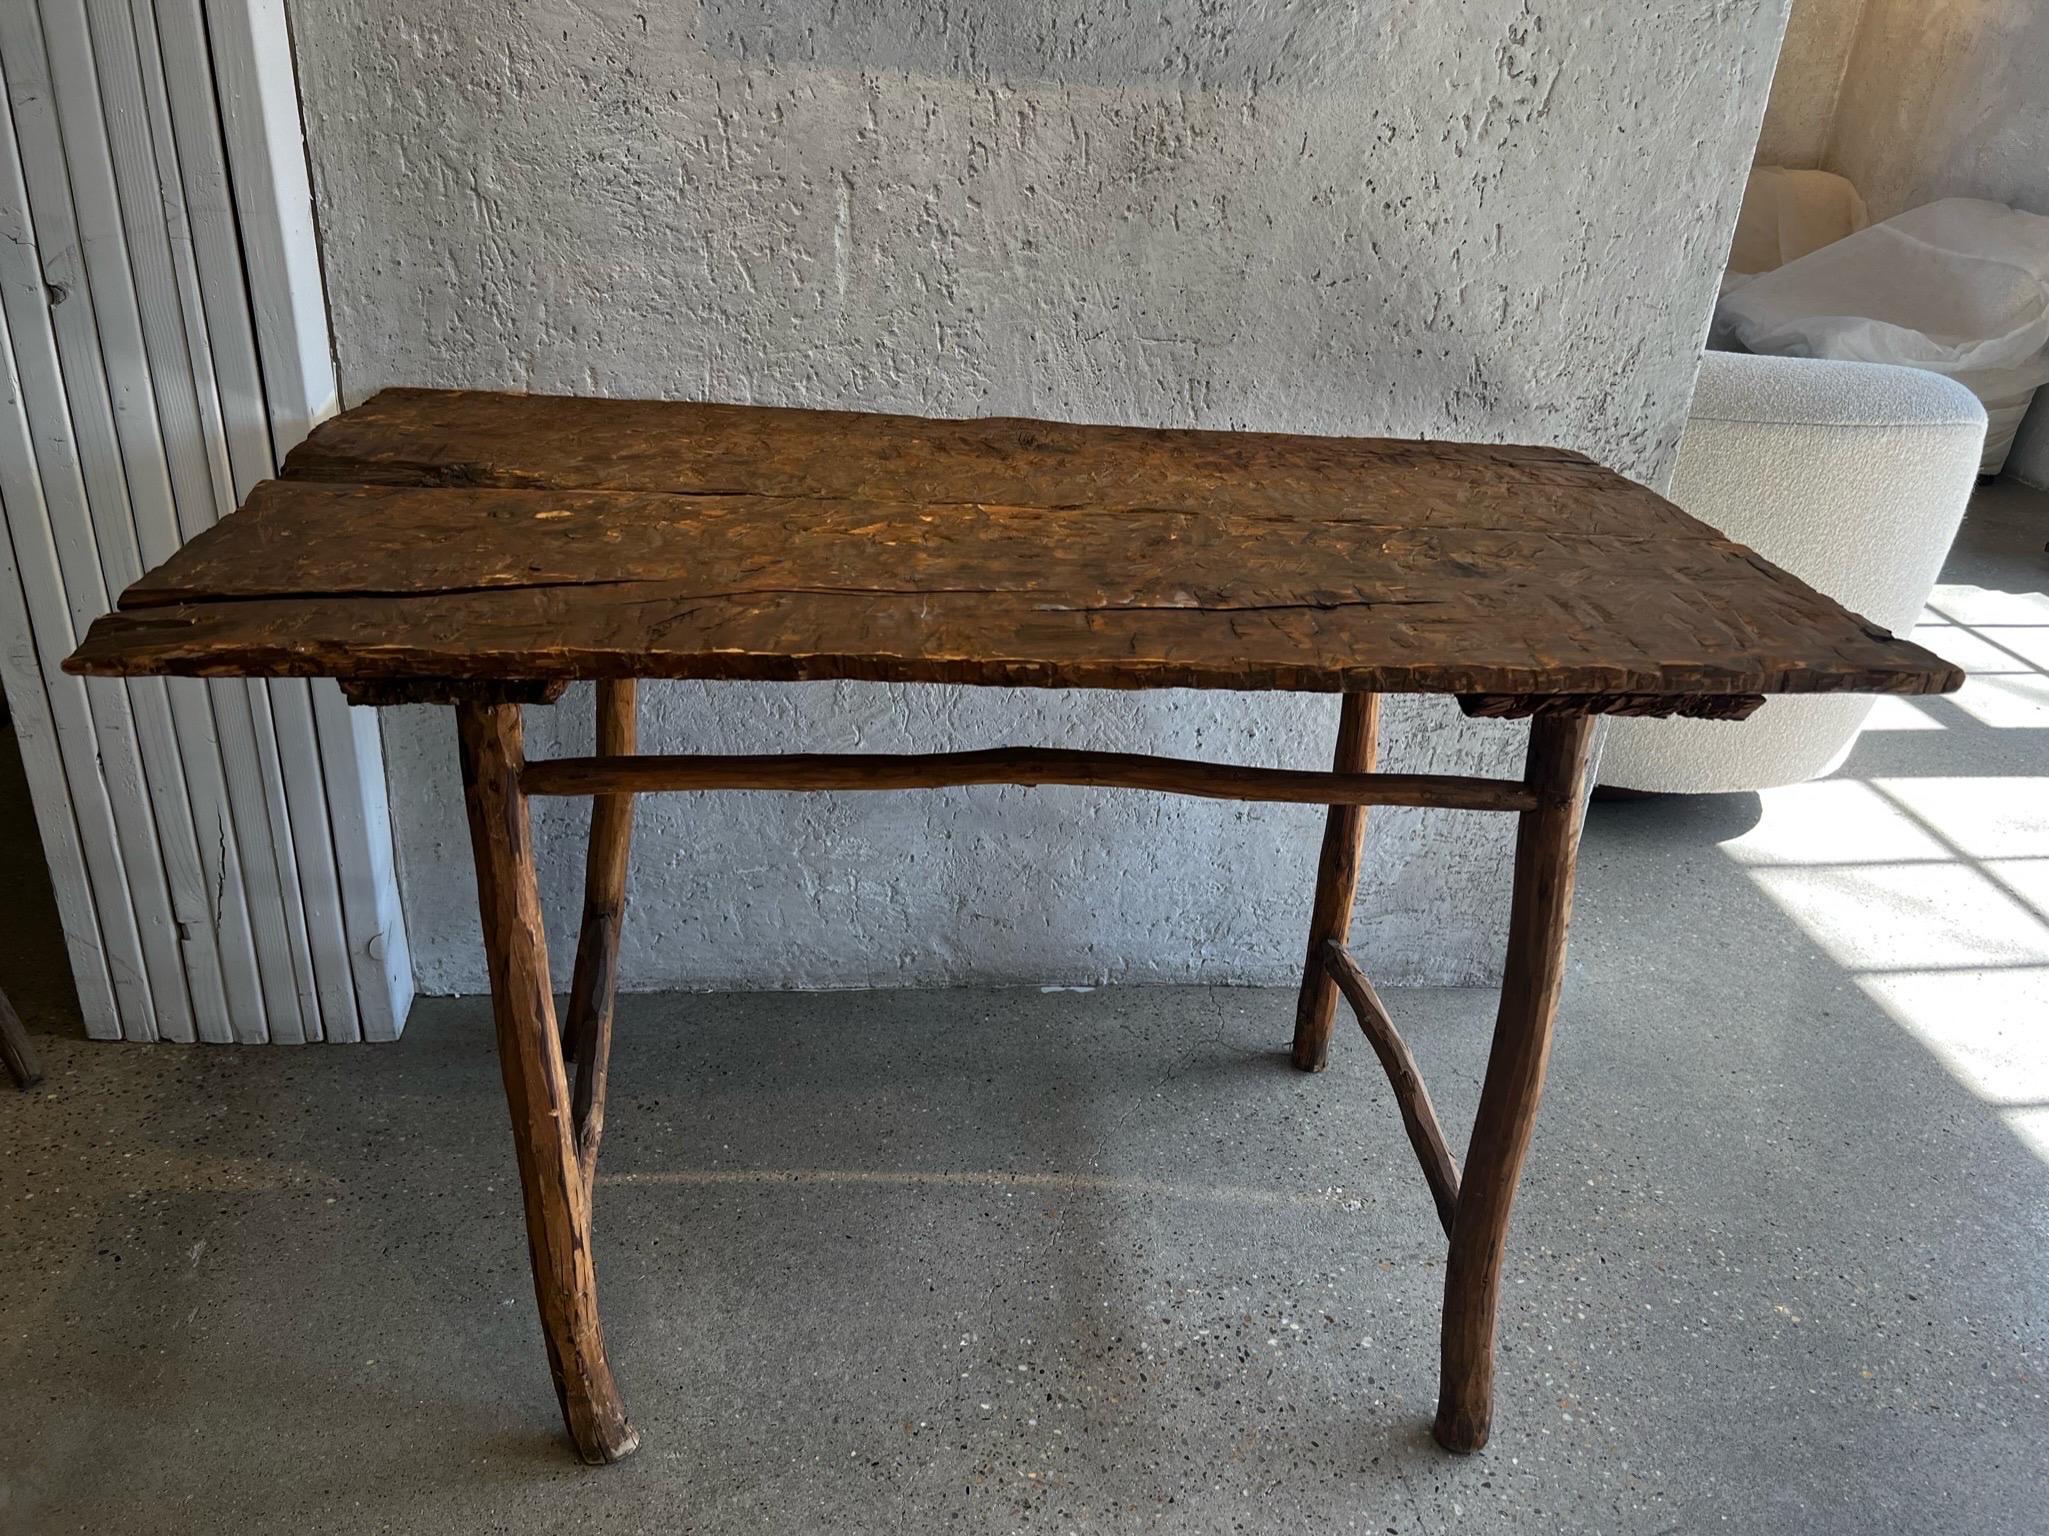 Il s'agit d'une authentique table de ferme du 18e siècle. Chaque centimètre est comme il l'a été pendant des siècles. Elegant et osseux, c'est une pièce magnifique dans n'importe quel décor. 